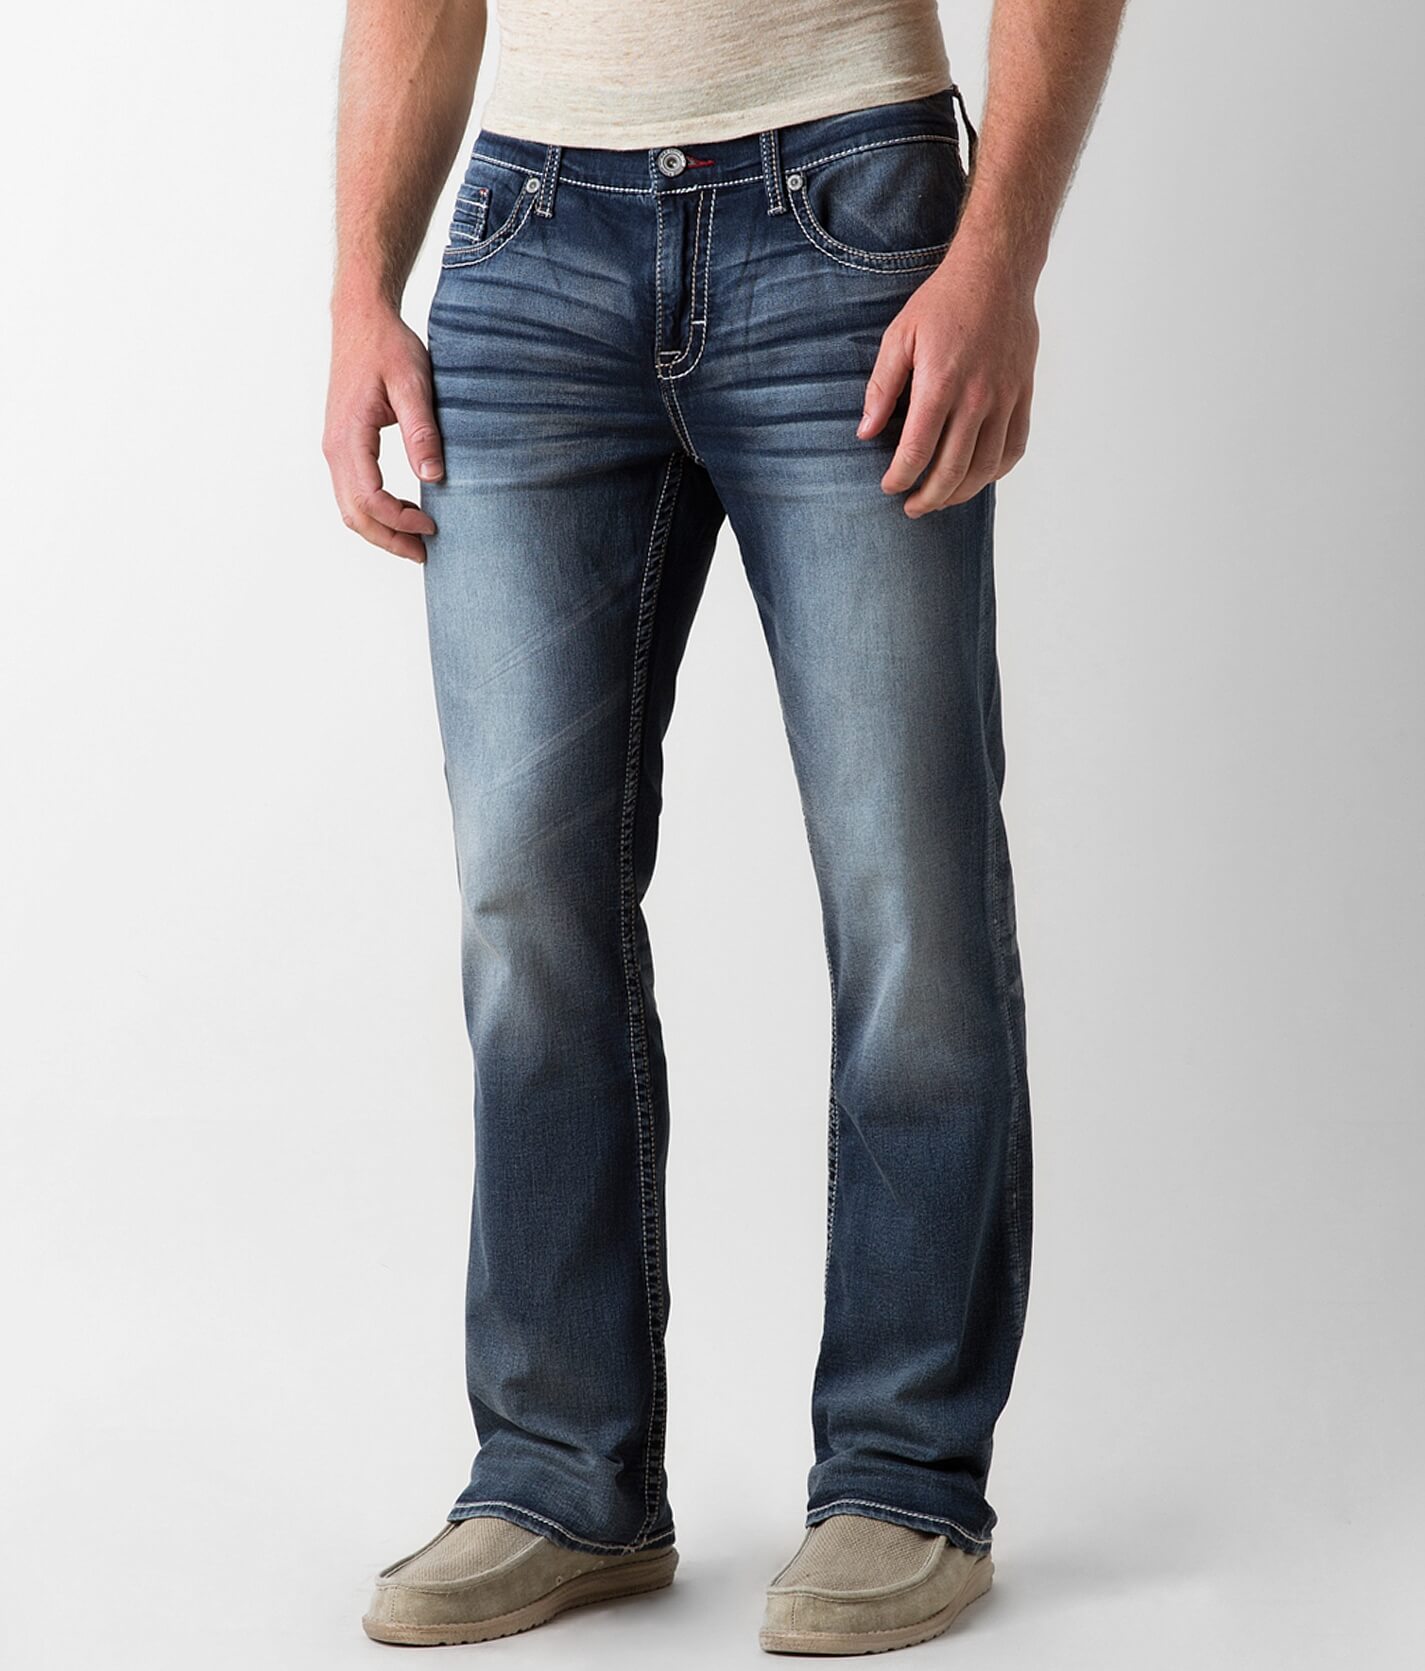 bke jeans mens